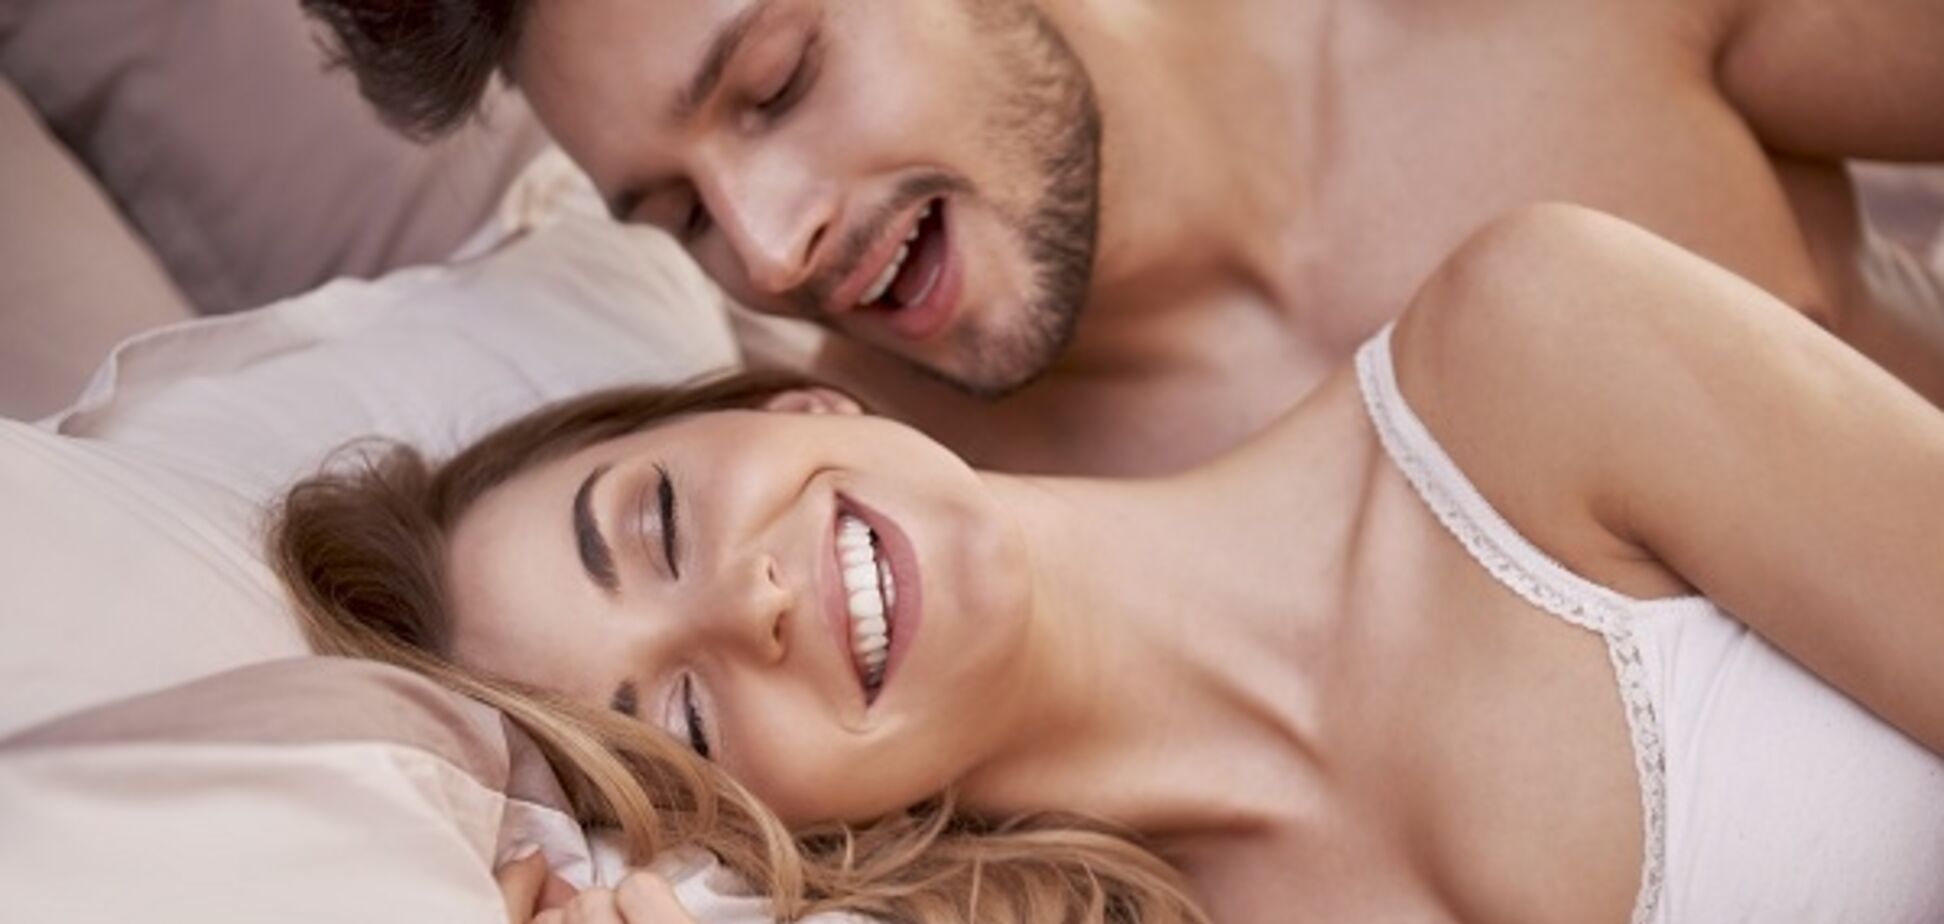 Чего хотят женщины в постели: раскрыты главные секс-фантазии